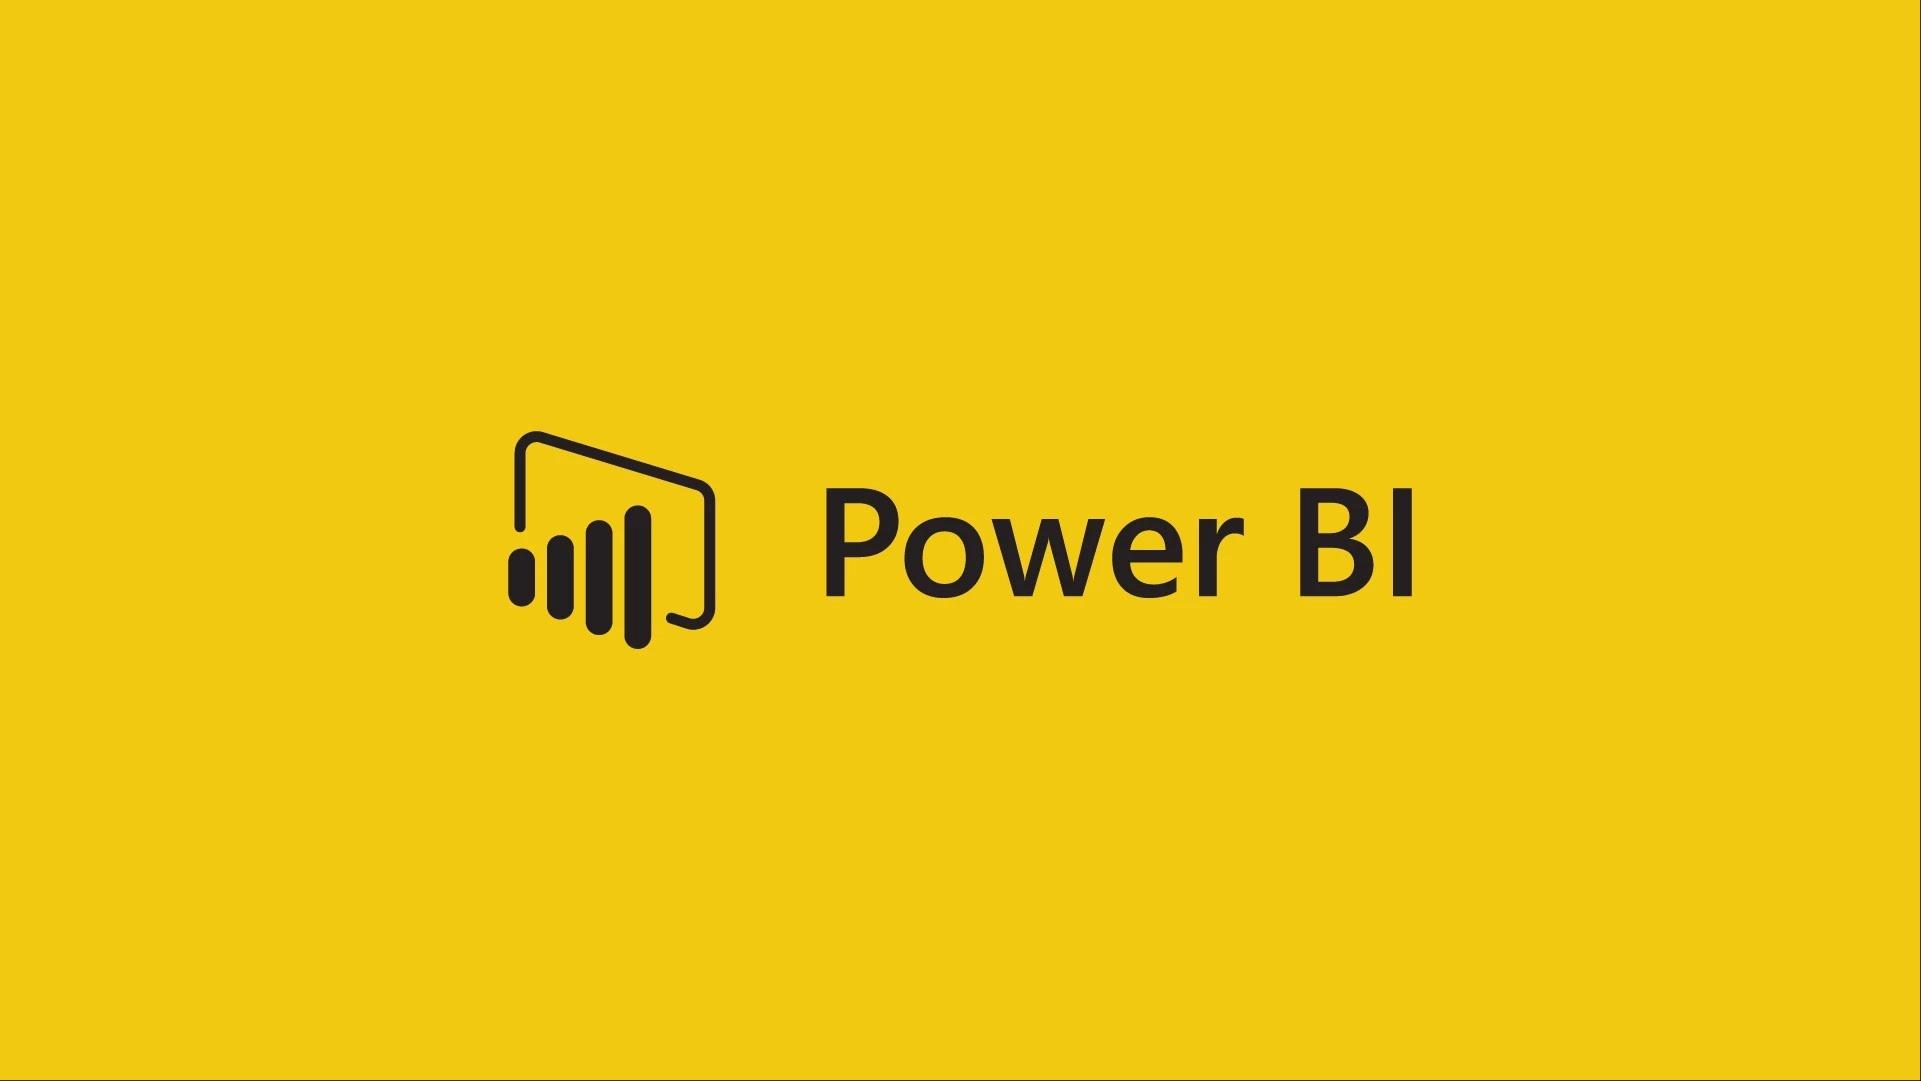  Power Bi project